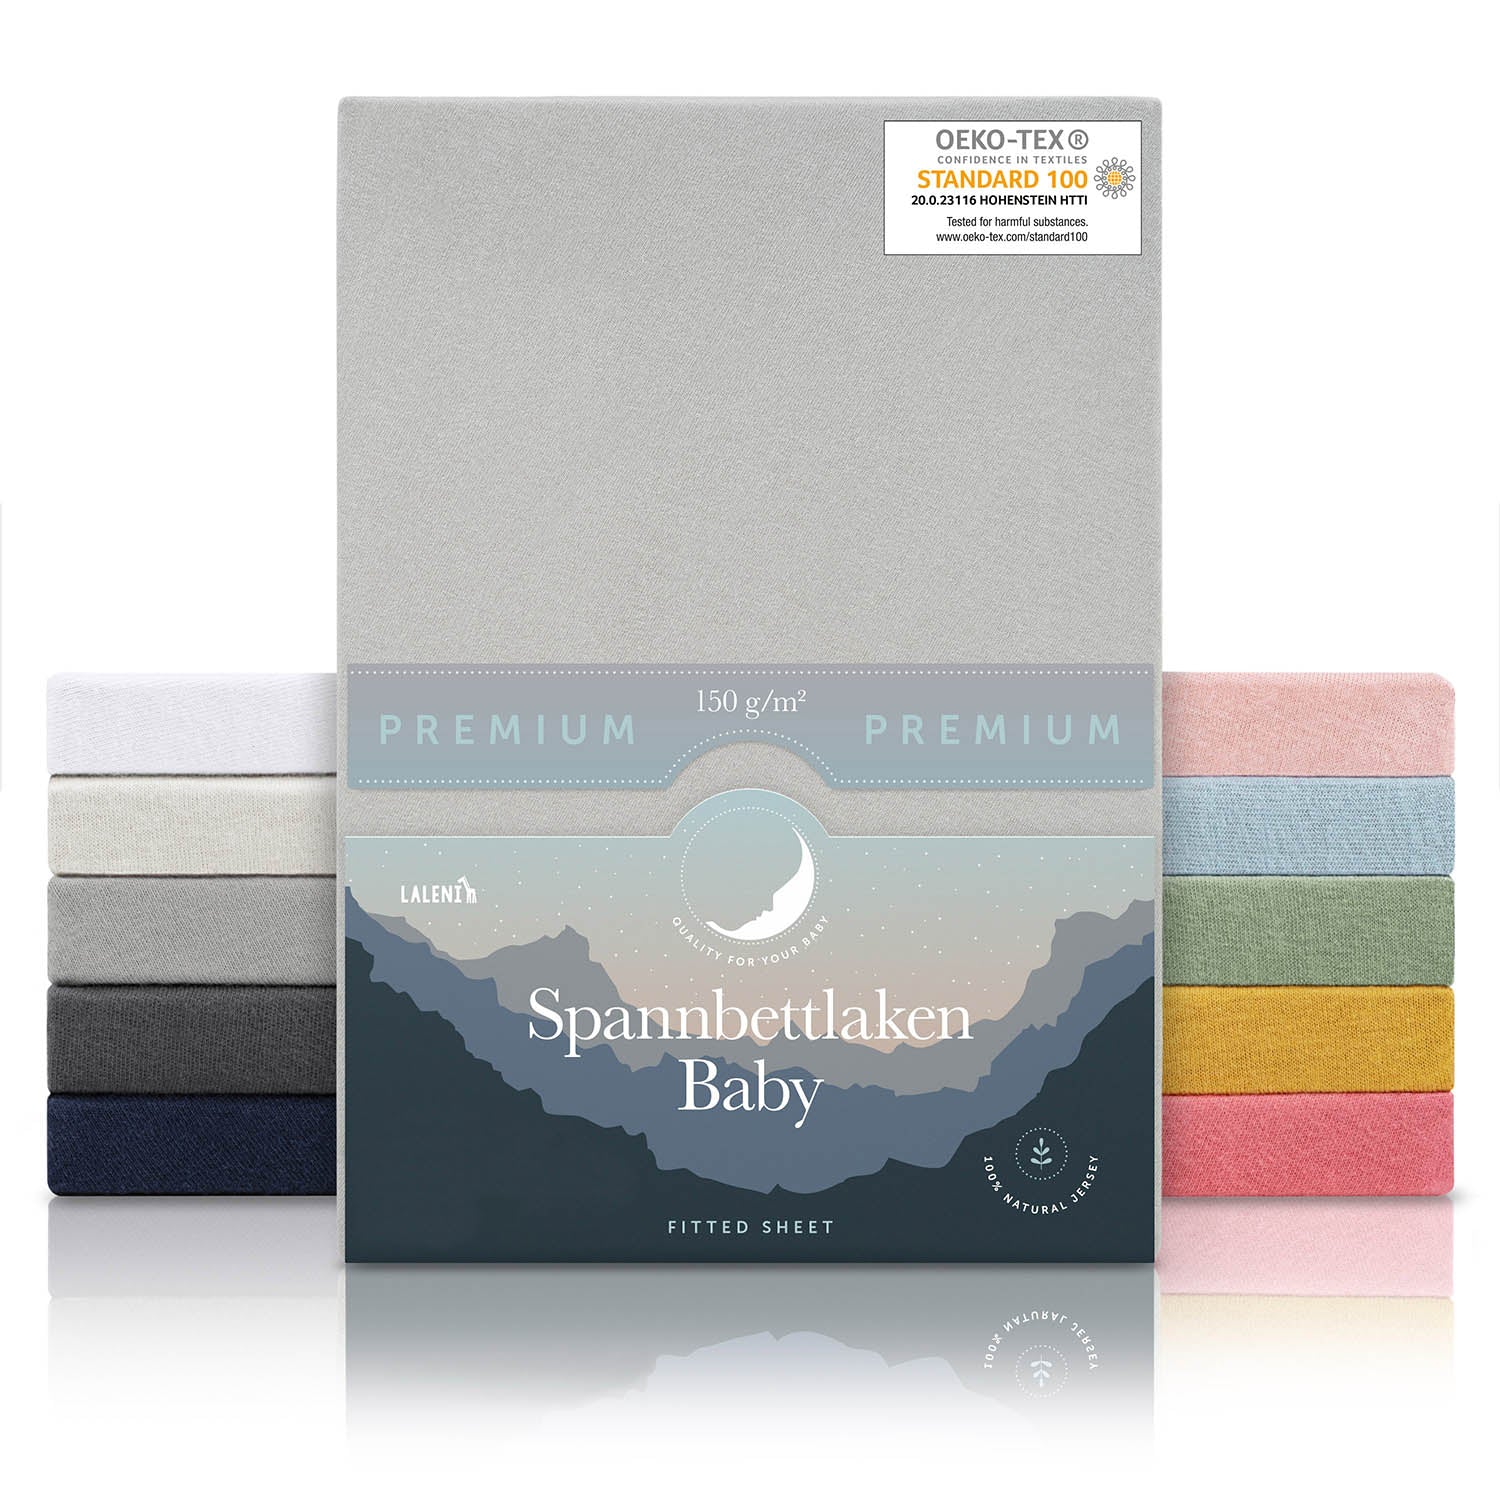 Verpackung von grauen Baby-Spannbettlaken mit OEKO-TEX Siegel und Angabe von 150 g/m² Qualität in verschiedenen Farben präsentiert